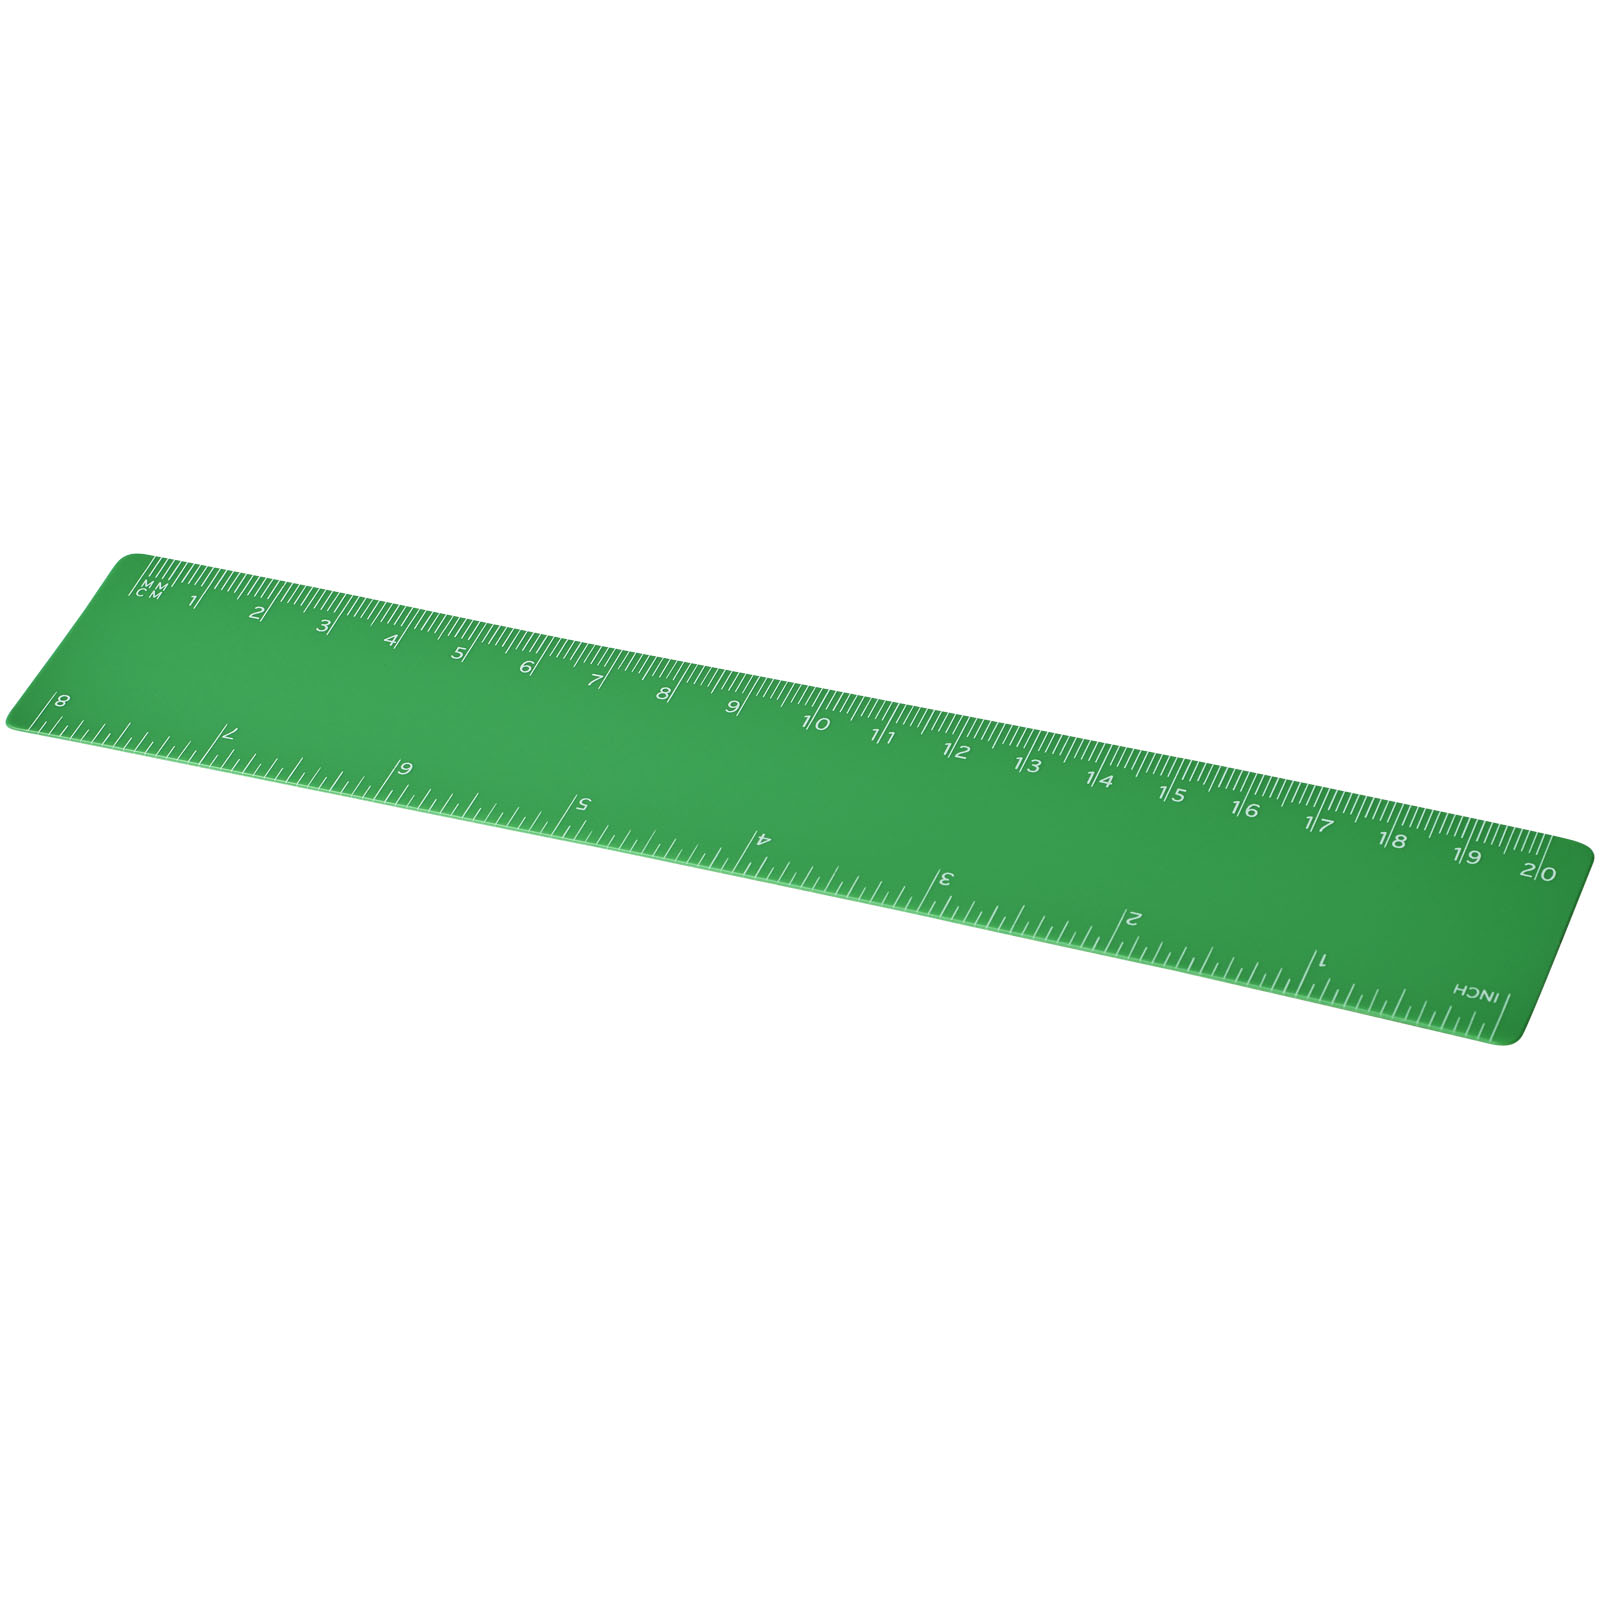 Desk Accessories - Rothko 20 cm plastic ruler